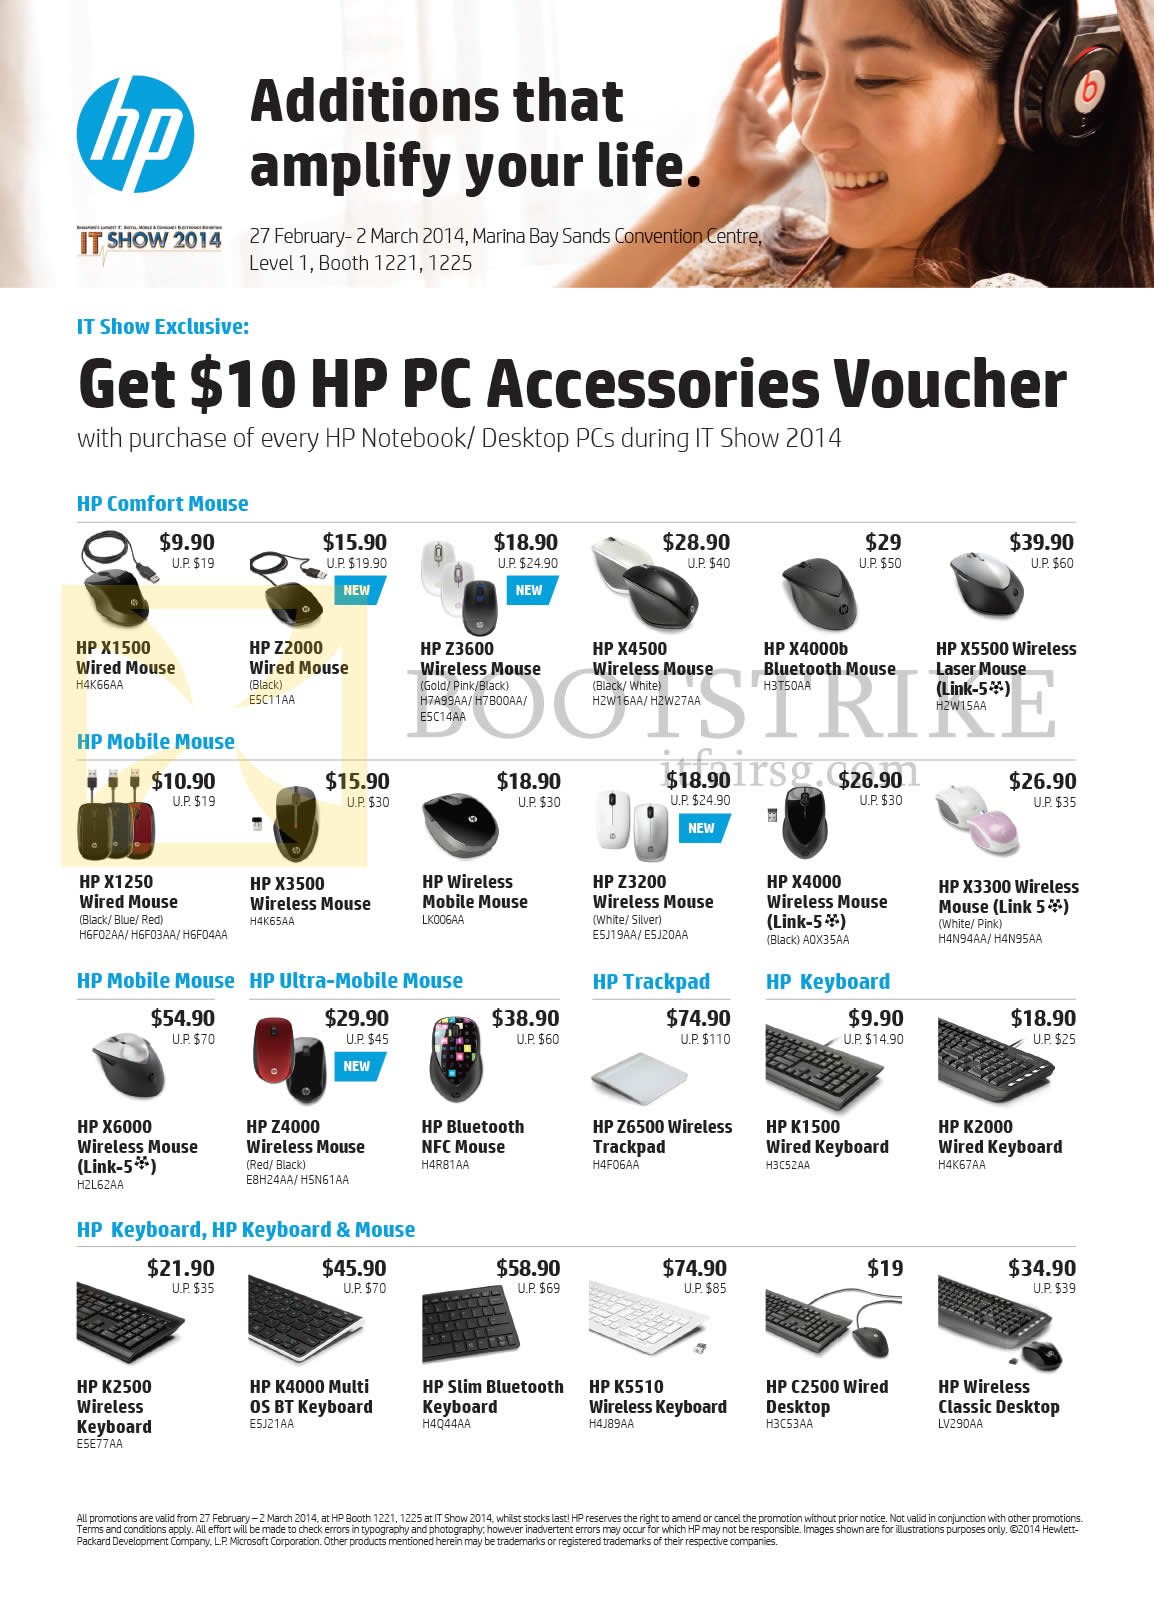 IT SHOW 2014 price list image brochure of HP Accessories Mouse, Keyboards, X1500, Z2000, Z3600, X4000b, X5500, X3300, X4000, Z3200, X3500, X1250, X6000, Z4000, Z6500, K1500, K2000, K2500, K4000, K5510, C2500